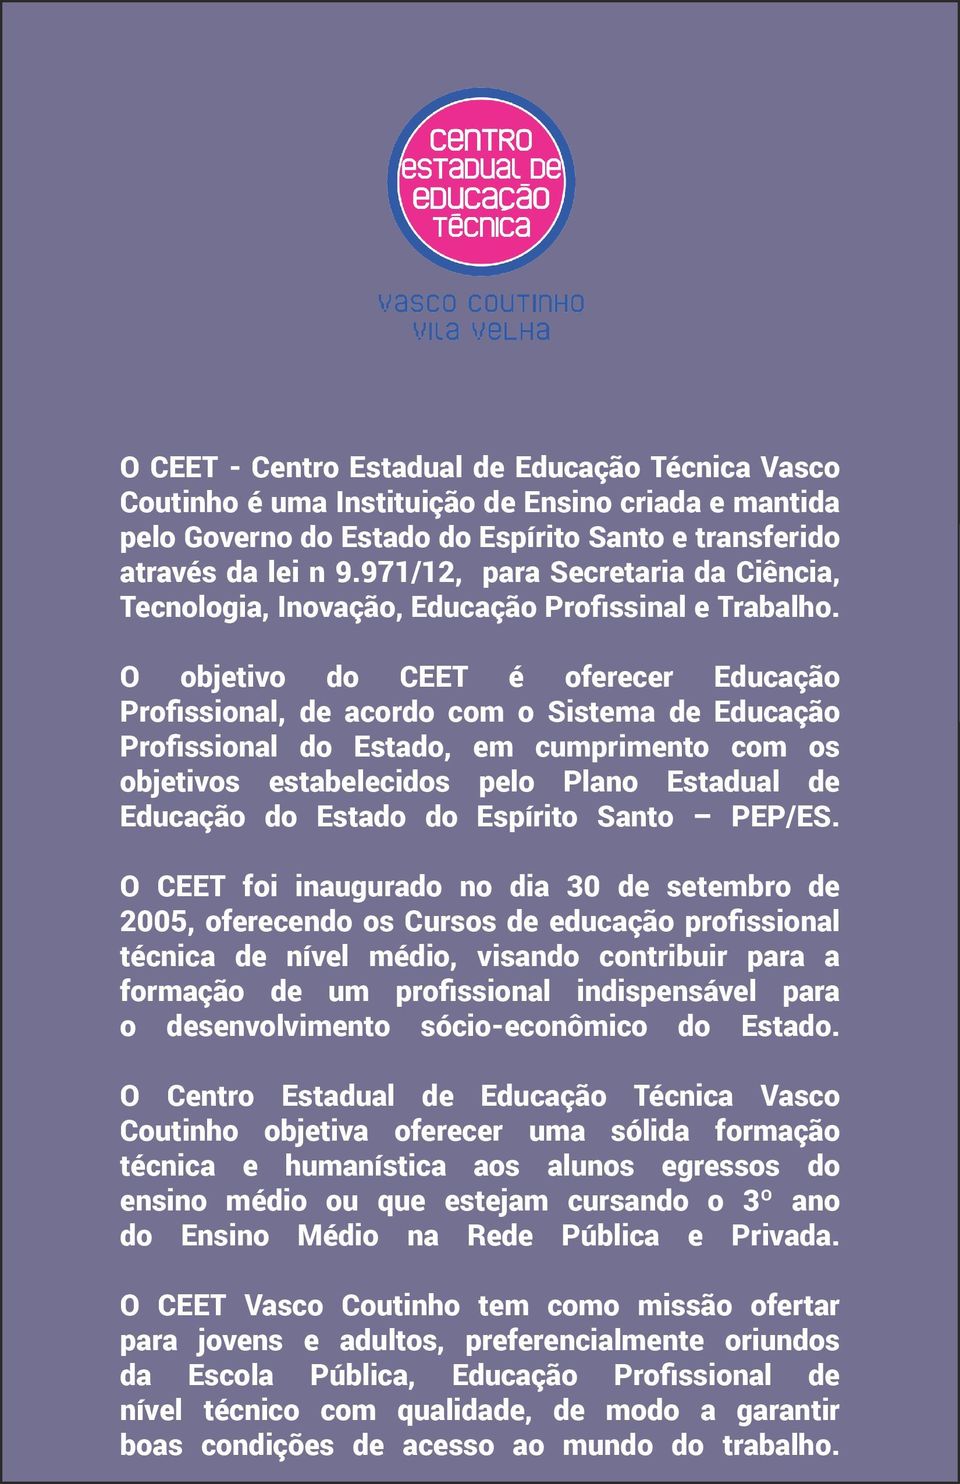 O objetivo do CEET é oferecer Educação Profissional, de acordo com o Sistema de Educação Profissional do Estado, em cumprimento com os objetivos estabelecidos pelo Plano Estadual de Educação do